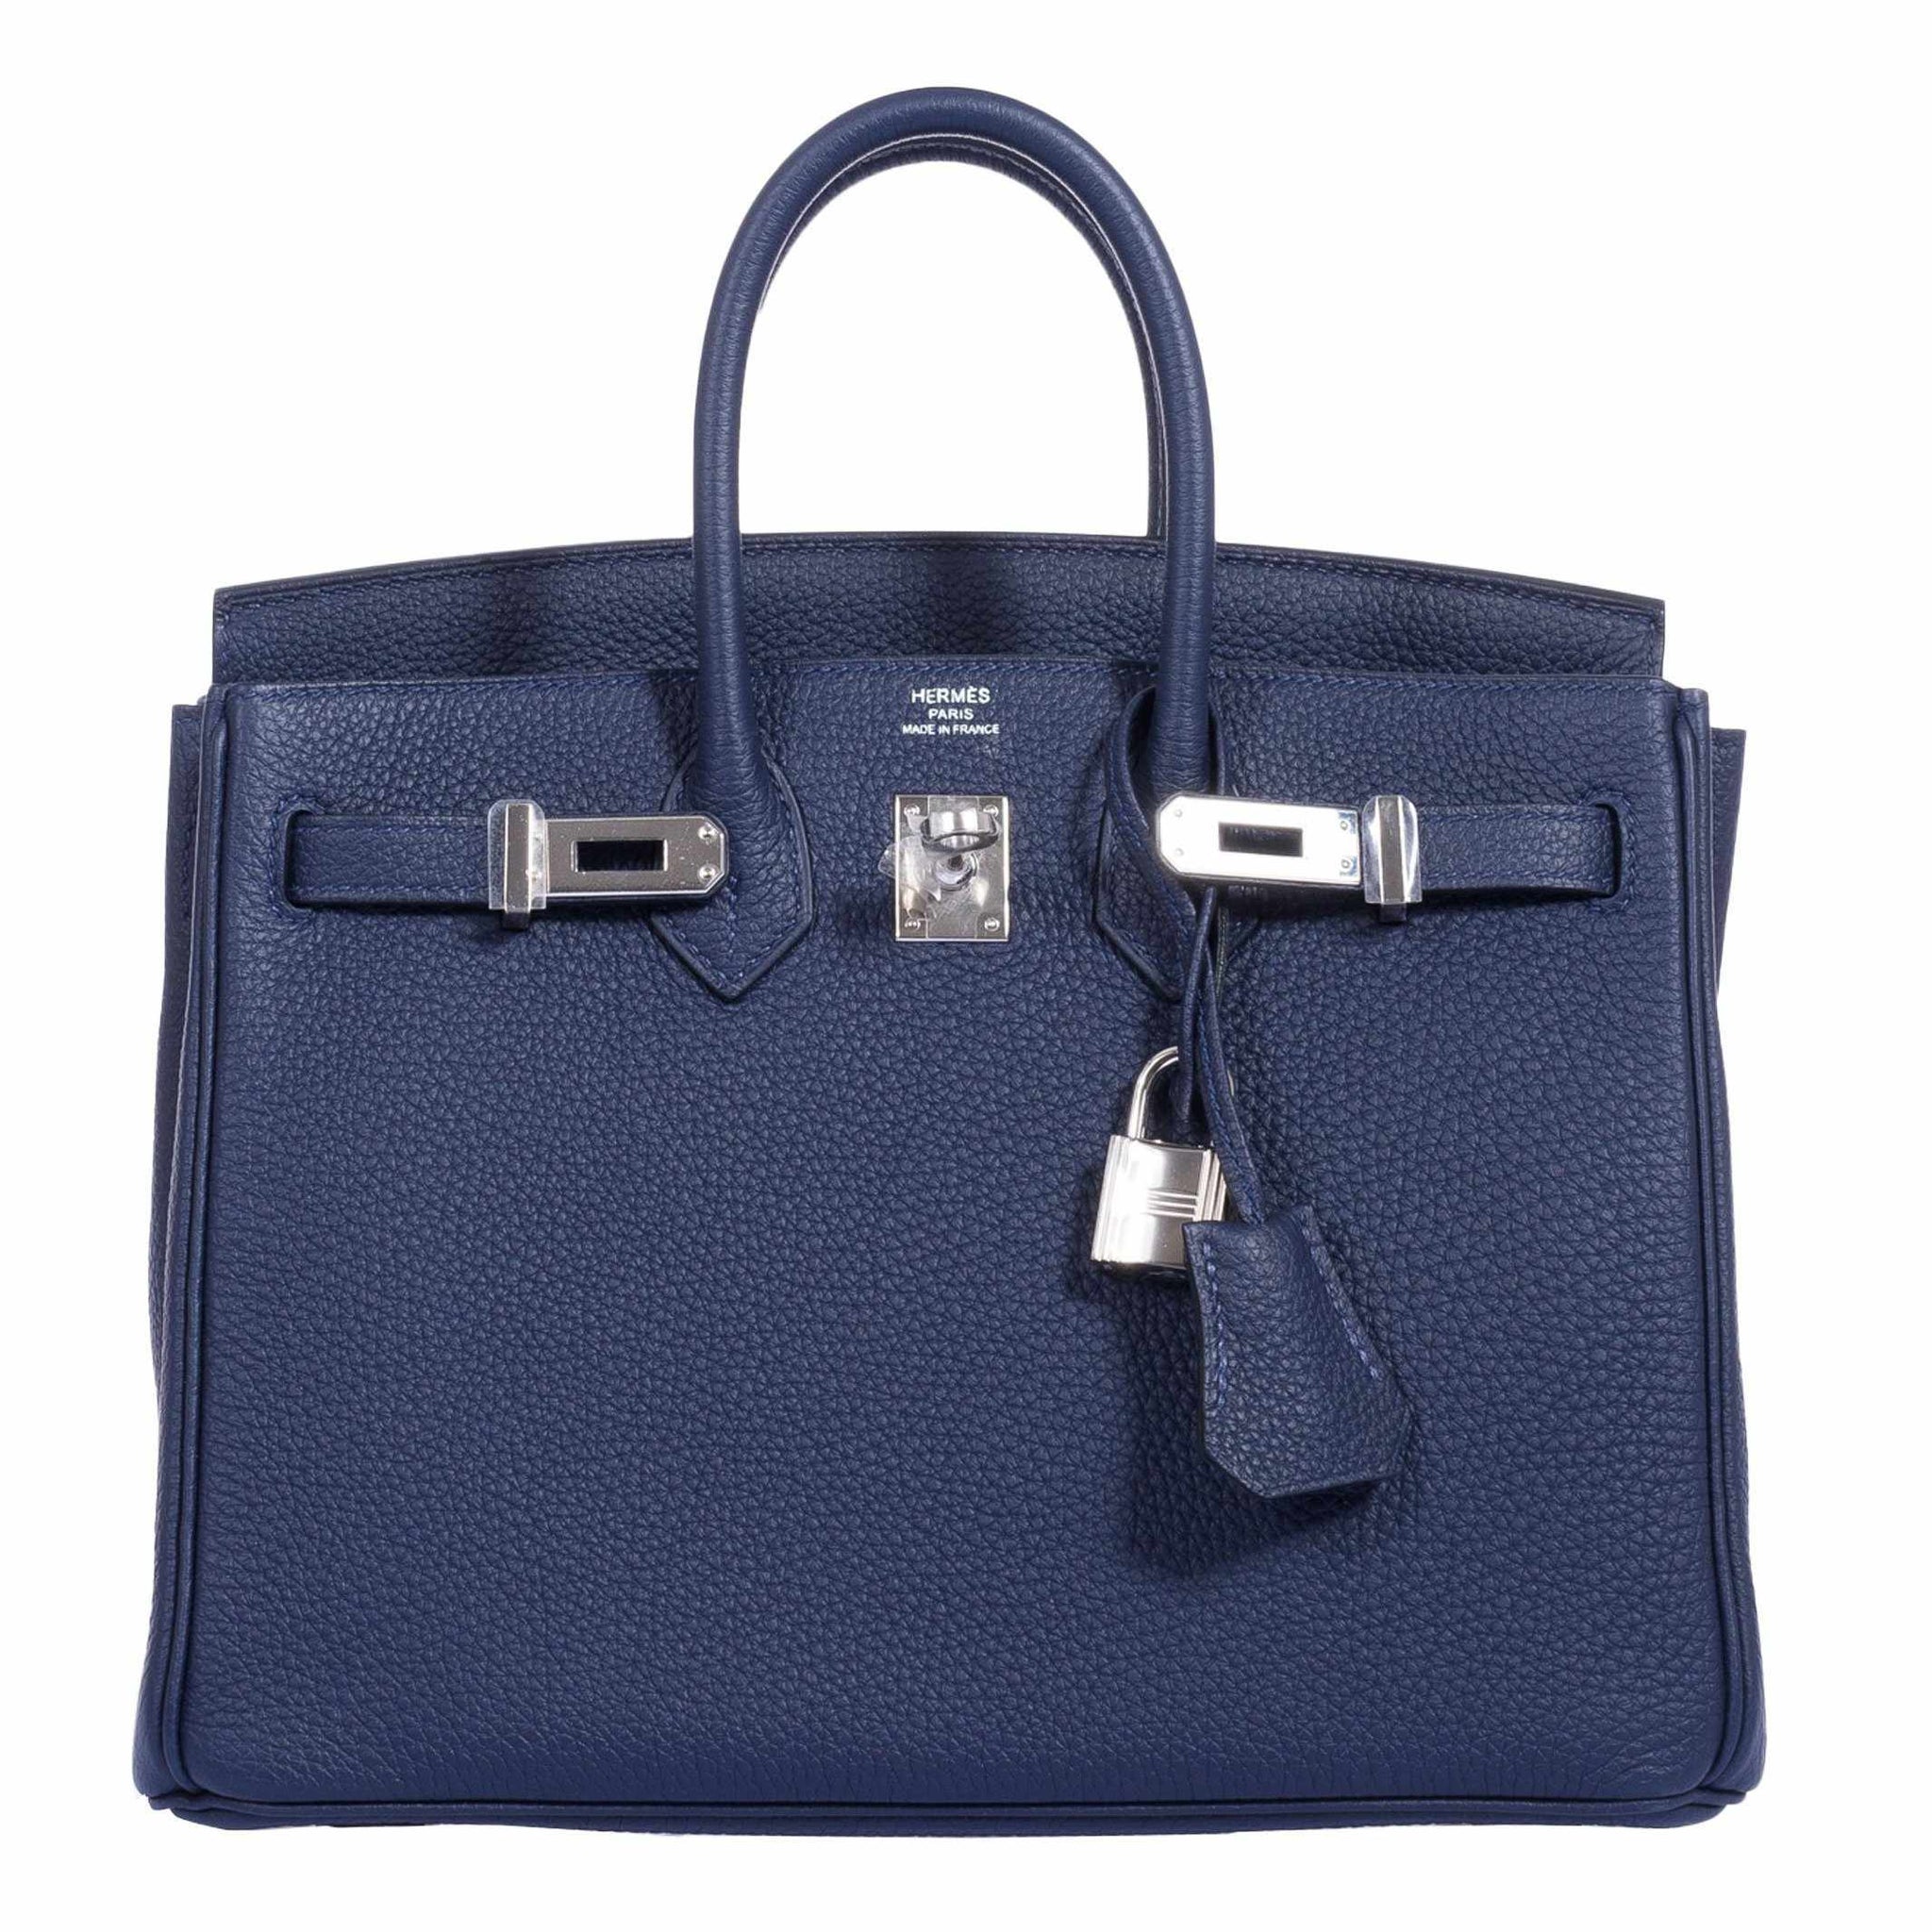 Hermes Glacier Blue Togo 25 cm Birkin Bag- New Color